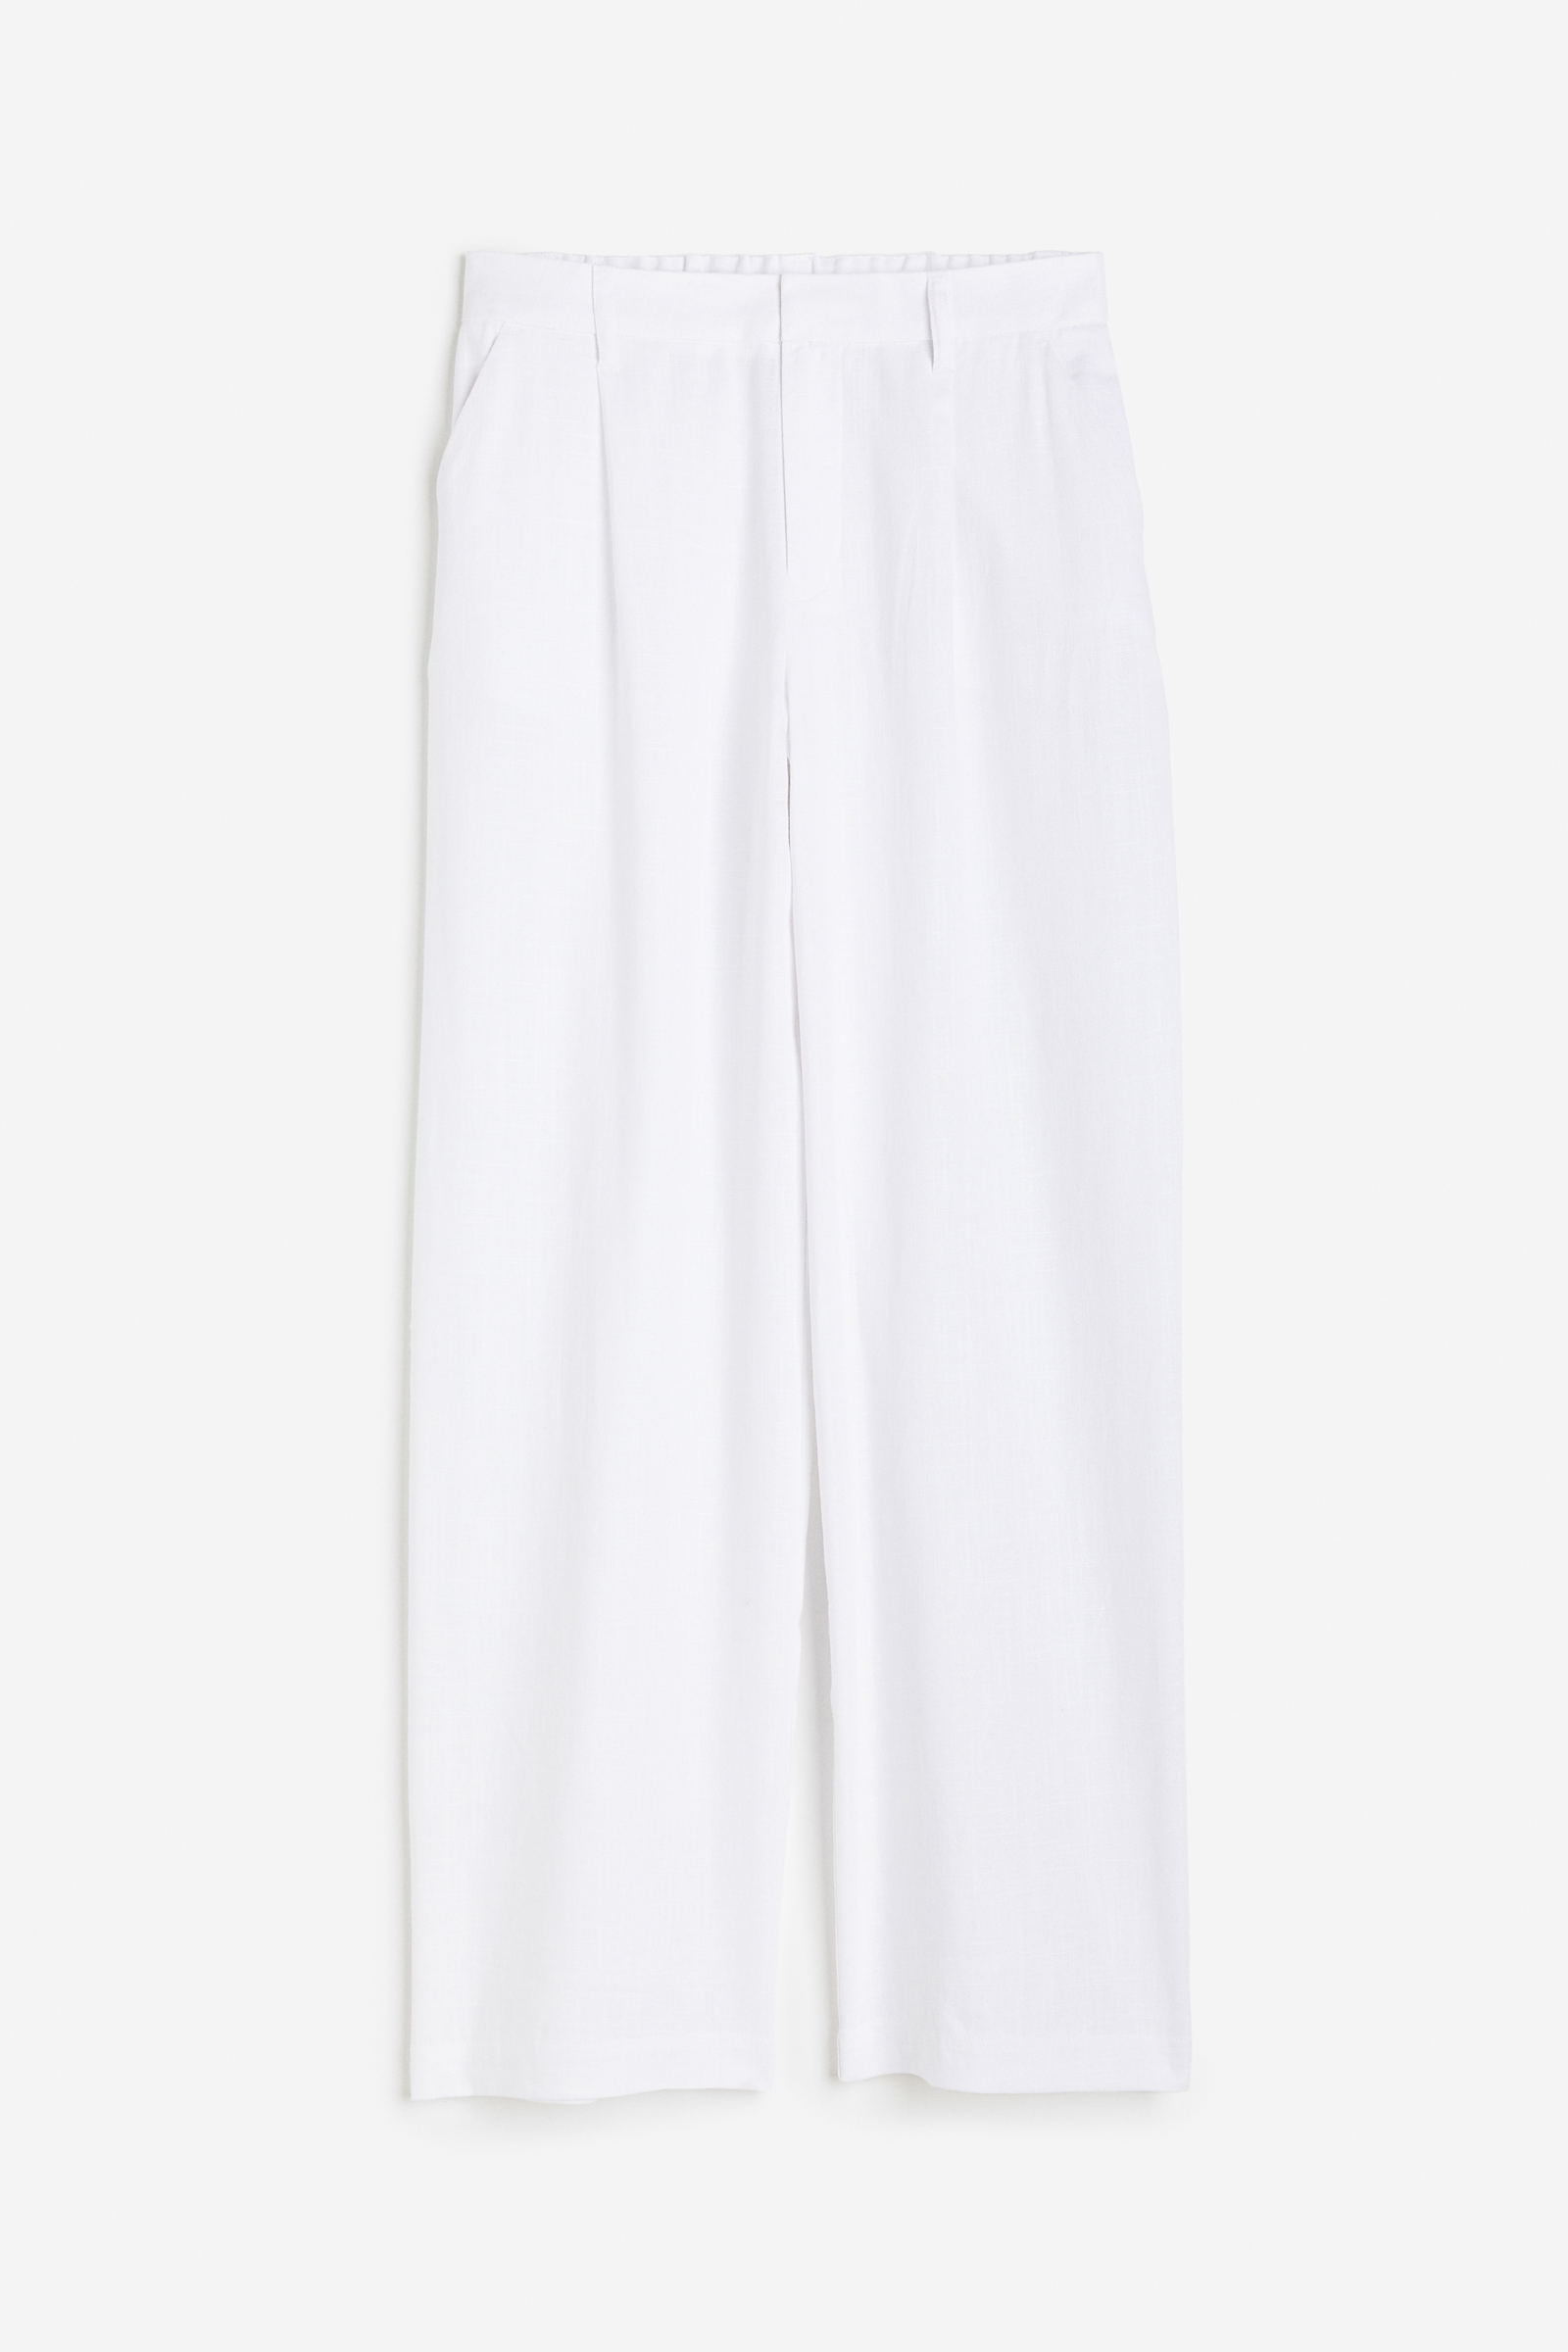 Pantalones para mujer de lino, tobilleros y más - H&M EC